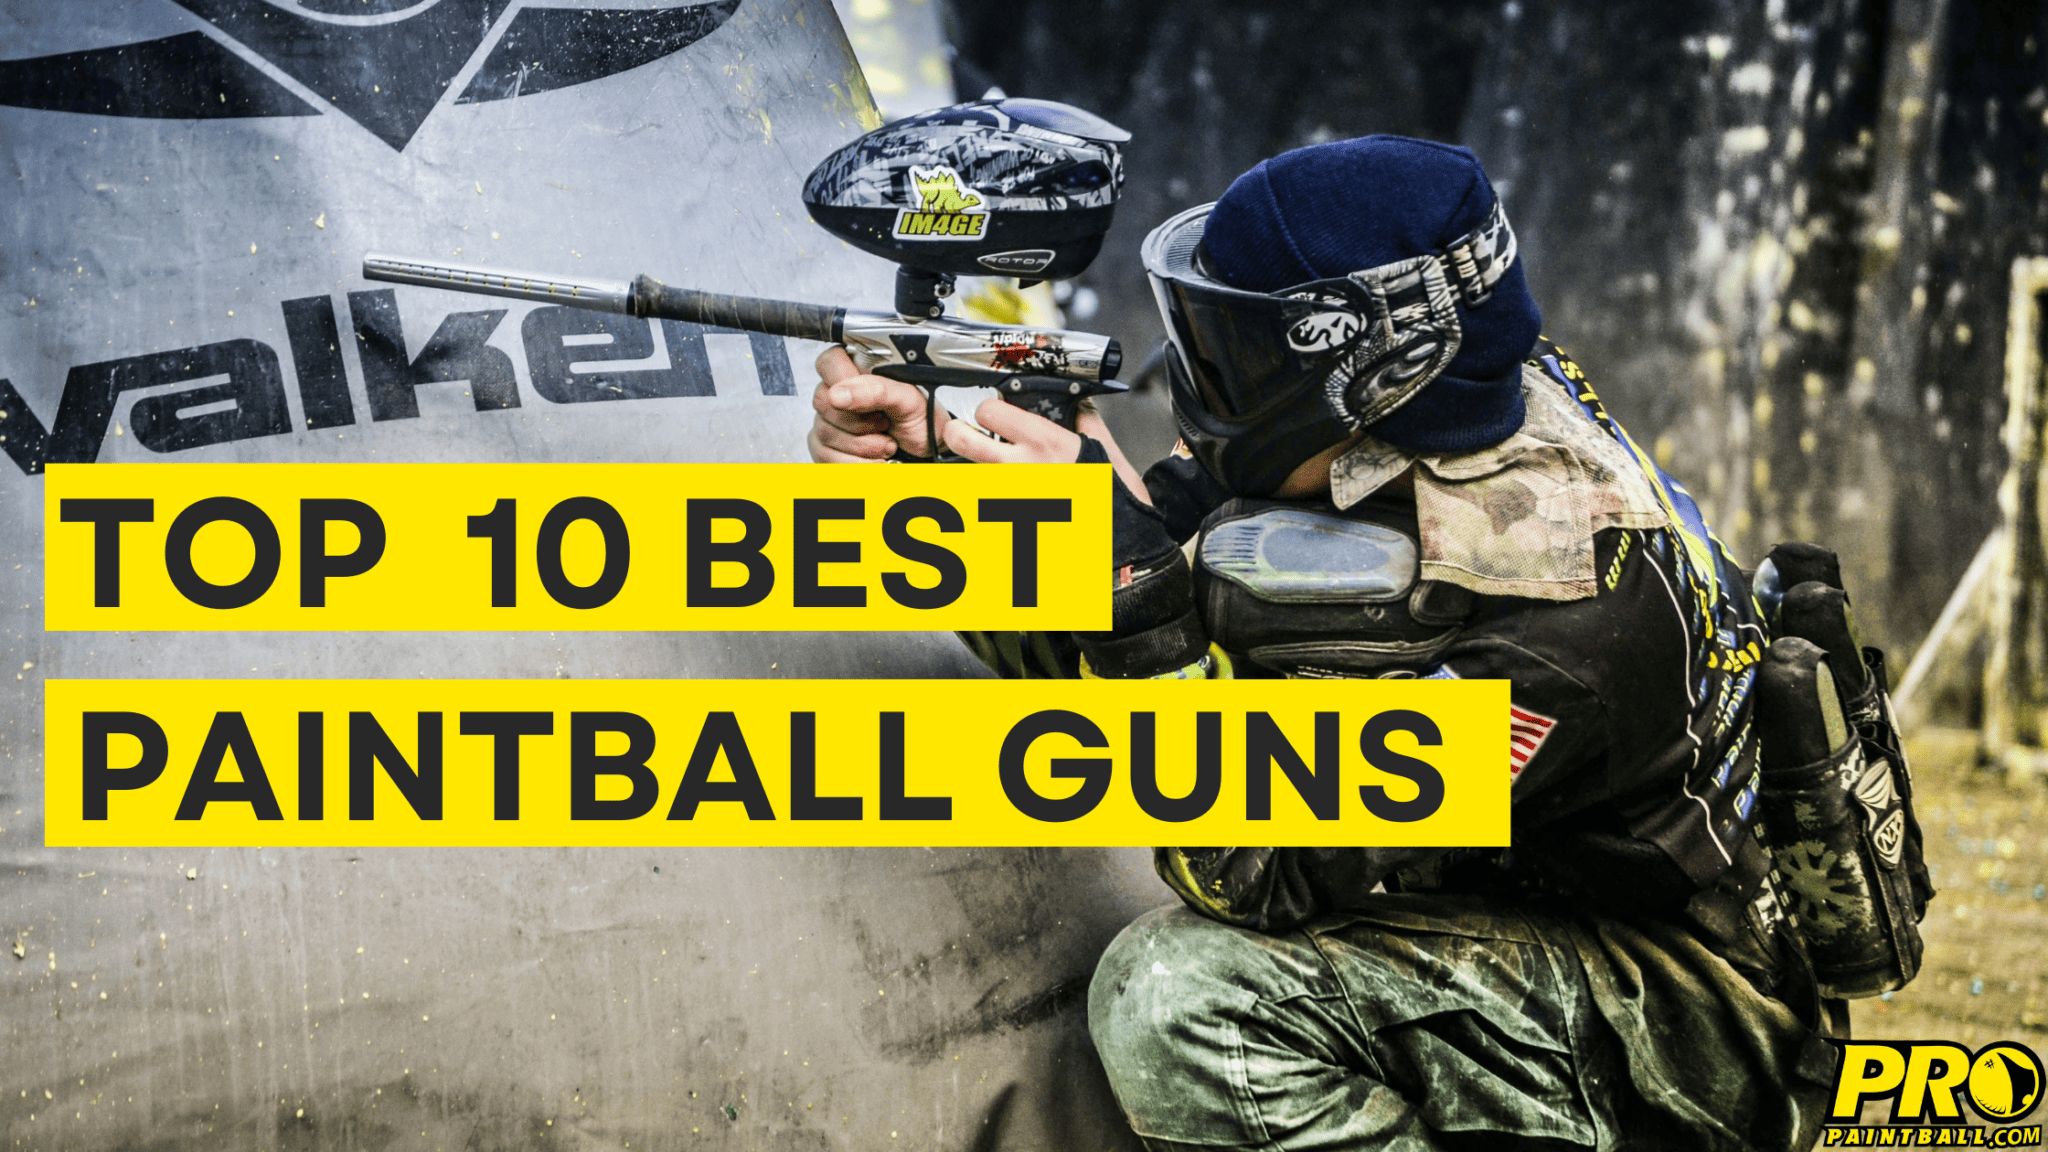 Top 10 Best Paintball Guns